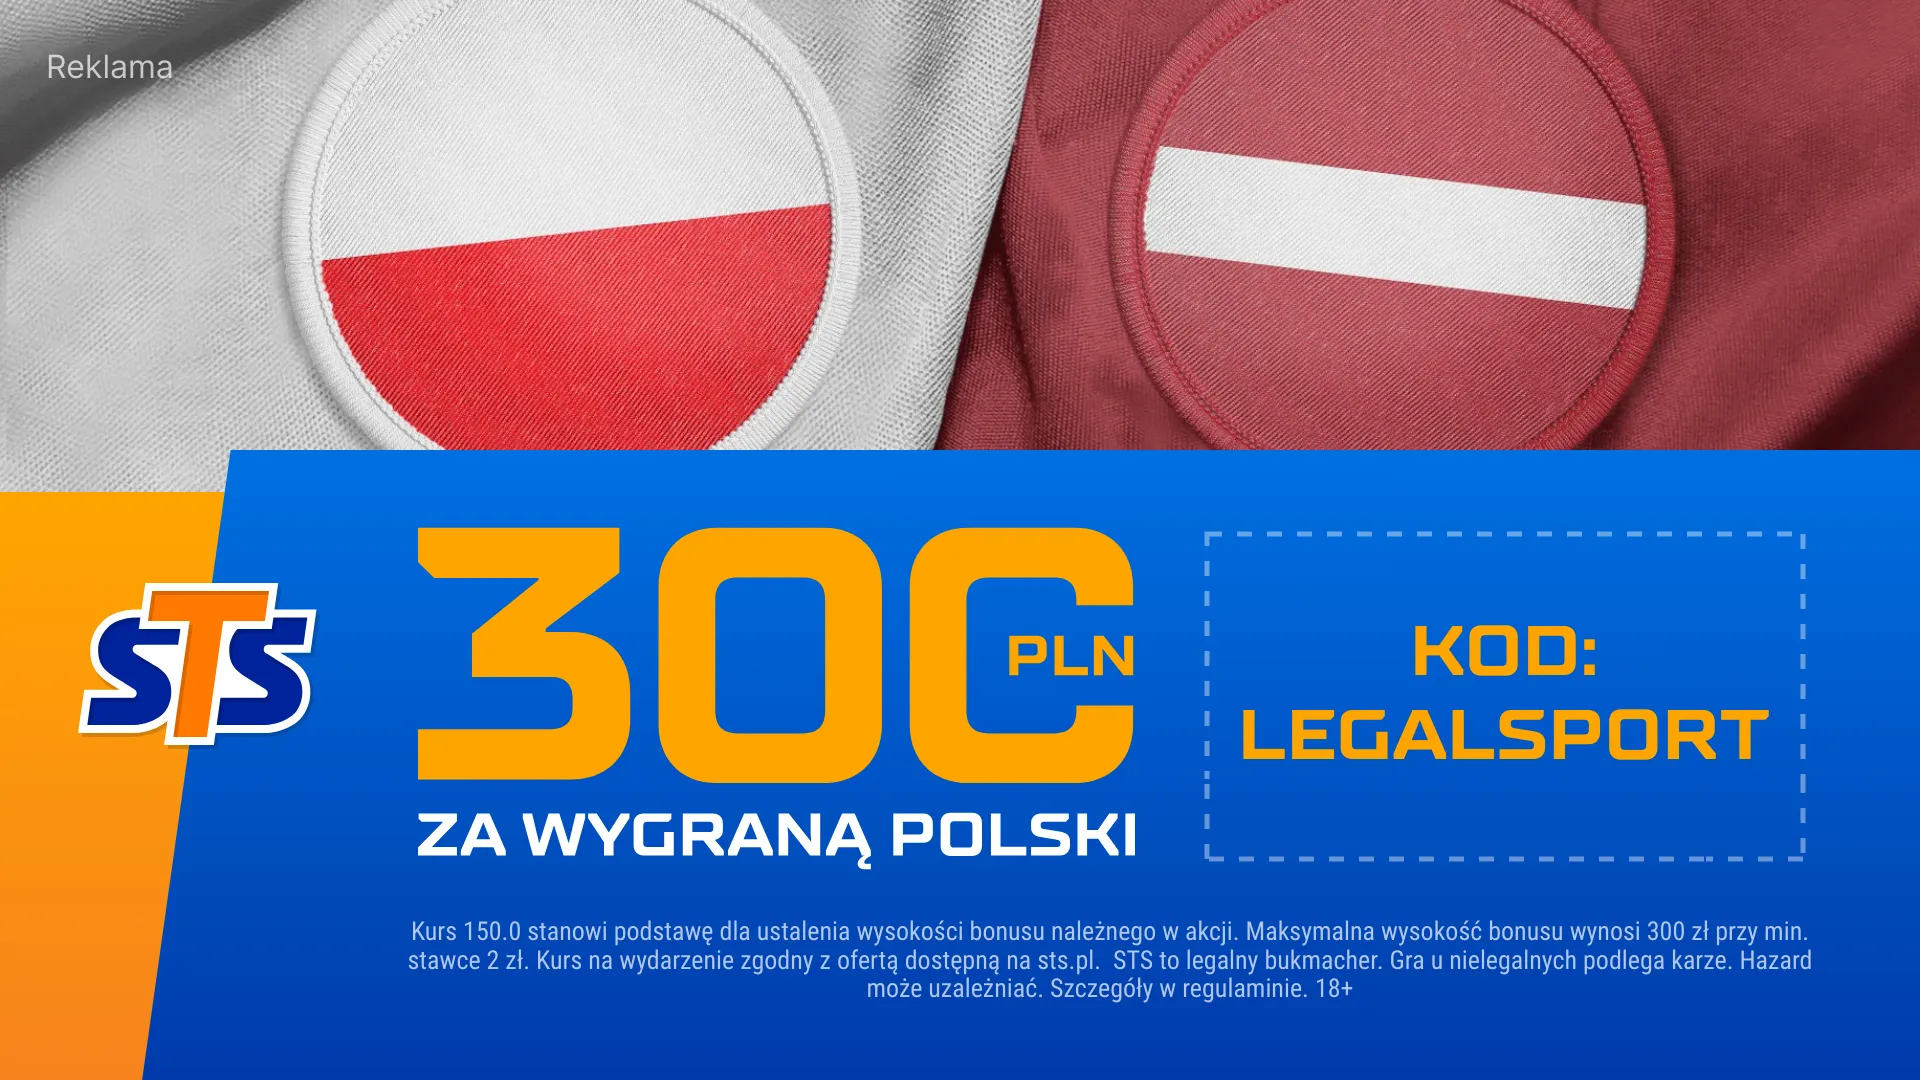 Obstaw zwycięstwo Polski z Łotwą w STS - zdobądź bonusowe 300 zł